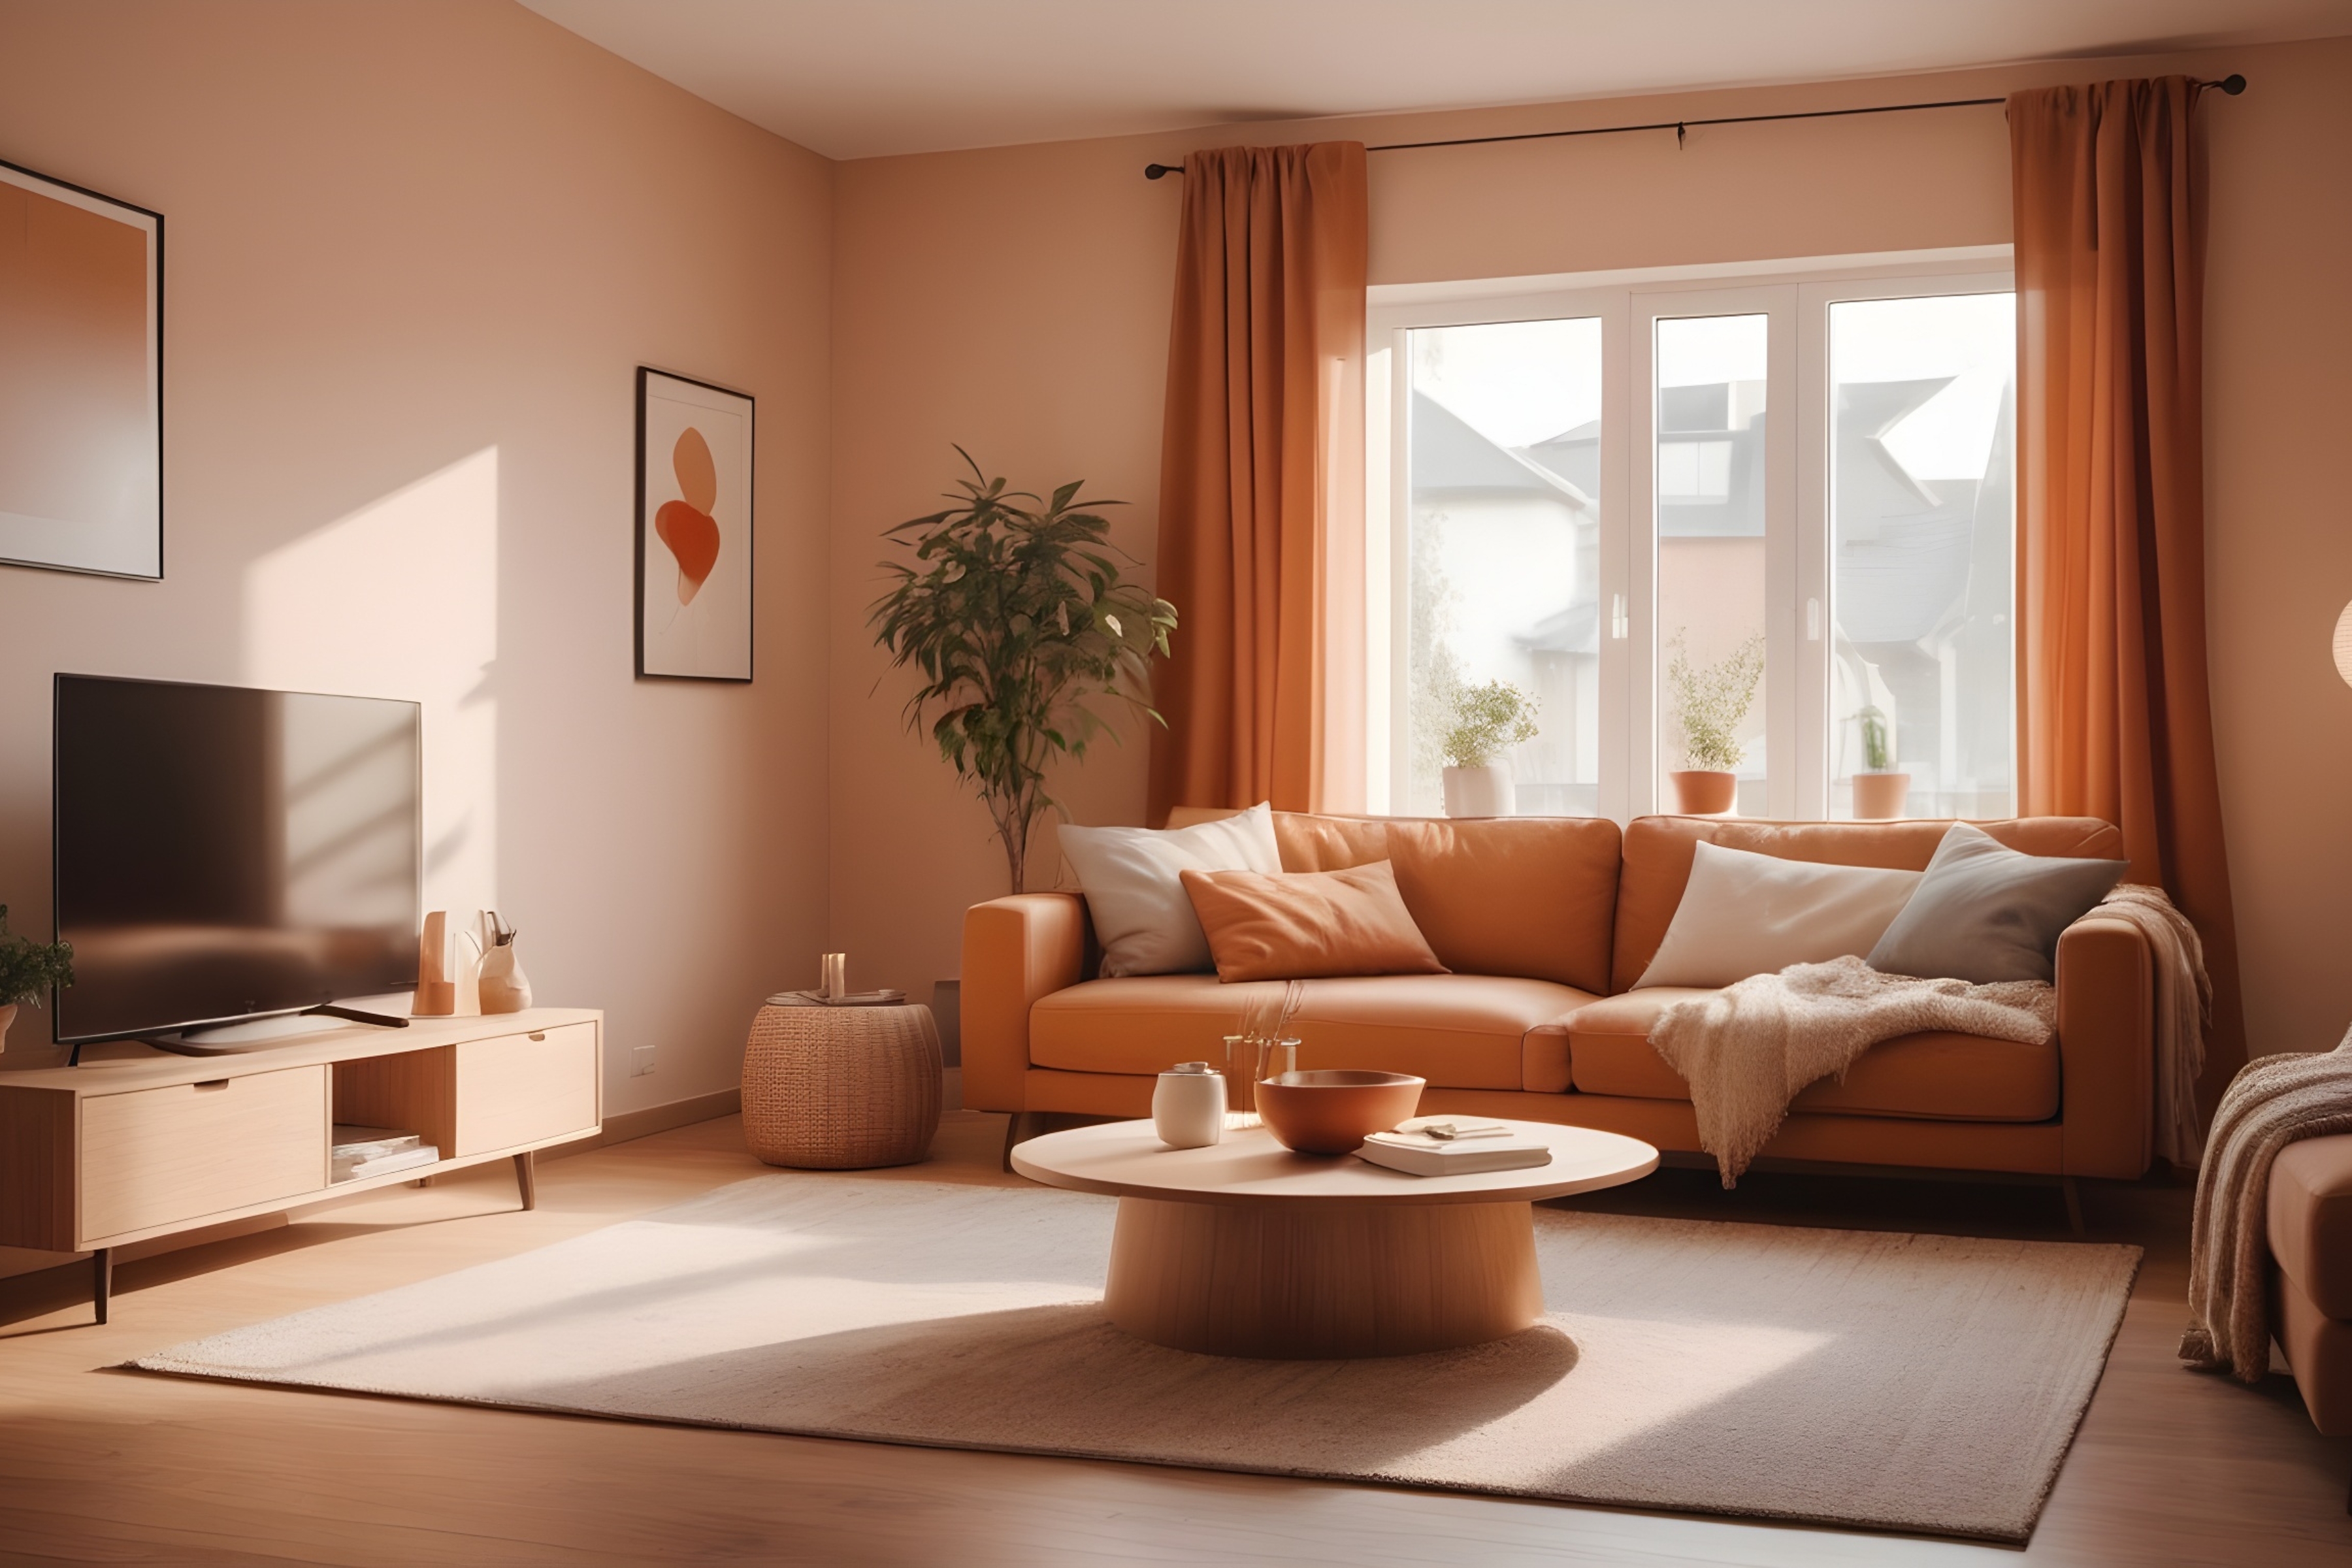 Hangulatos nappali, meleg színekkel és minimalista stílusban berendezve, bemutatva a színek és stílusok harmóniáját otthoni környezetben.